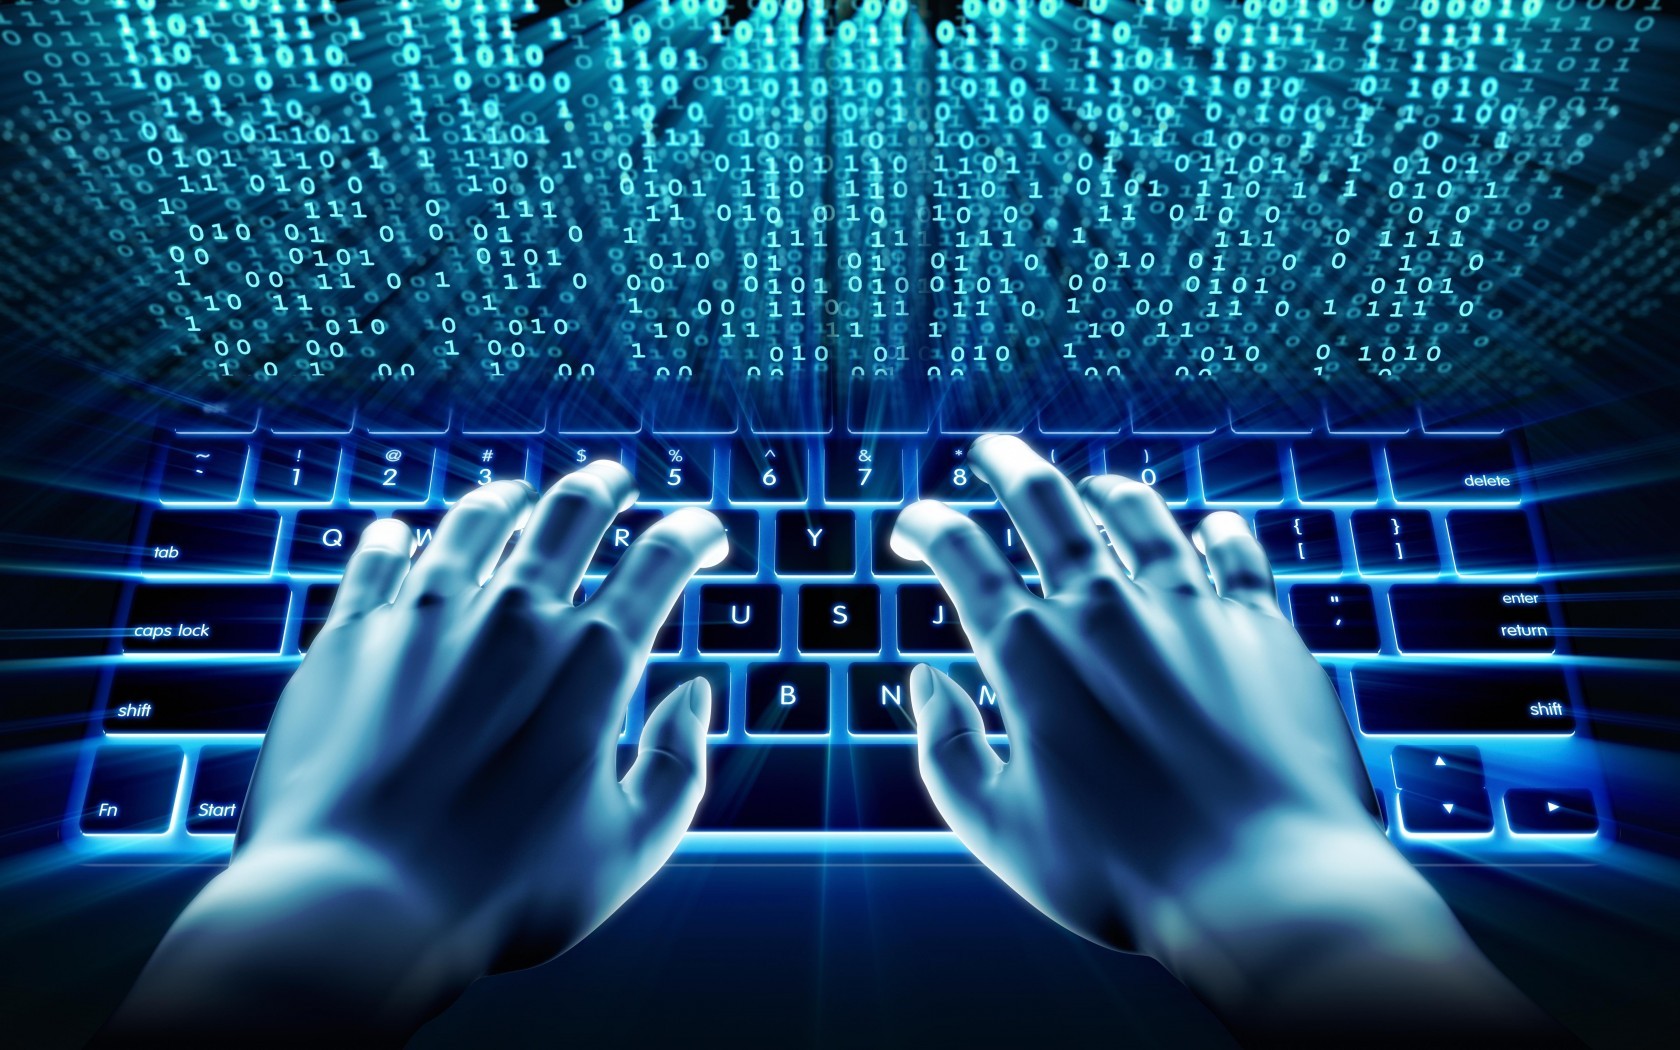 tastatur hintergrundbild,computer tastatur,elektronik,hand,technologie,elektrisches blau